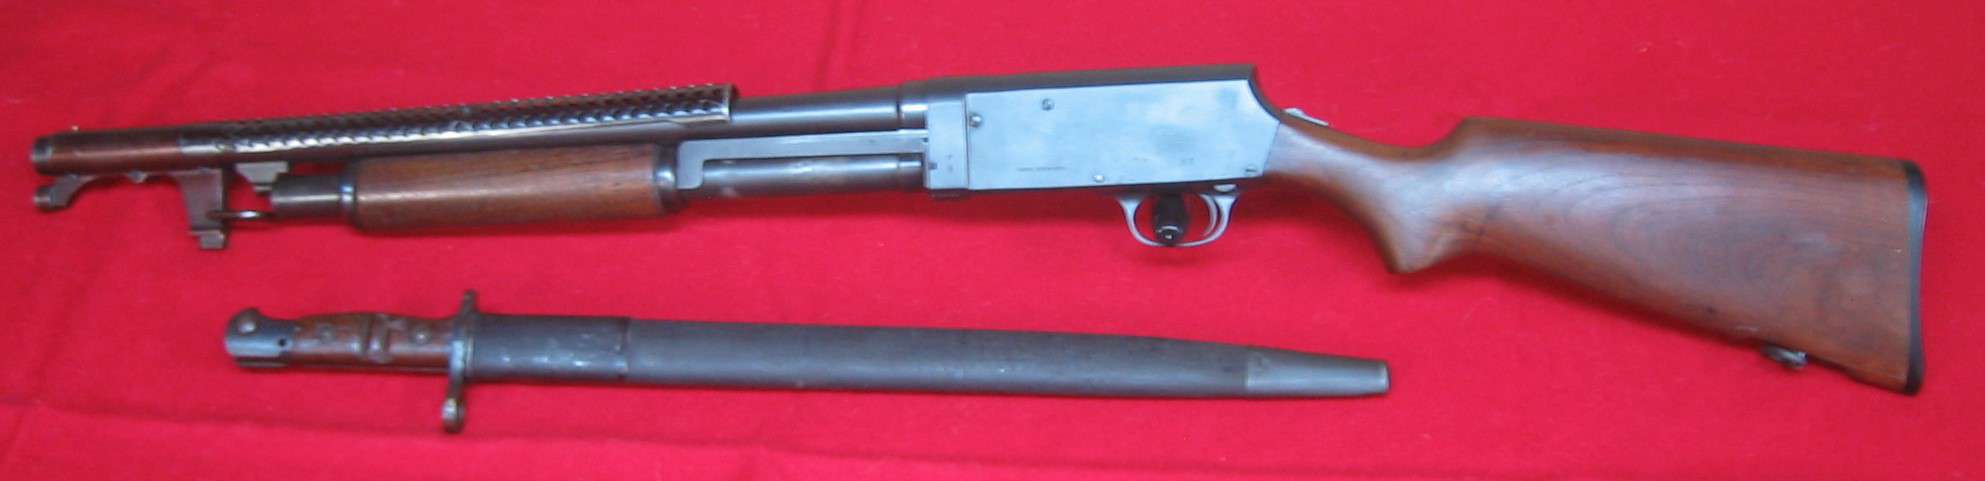 Stevens 520-30 Trench Gun by Keydet92